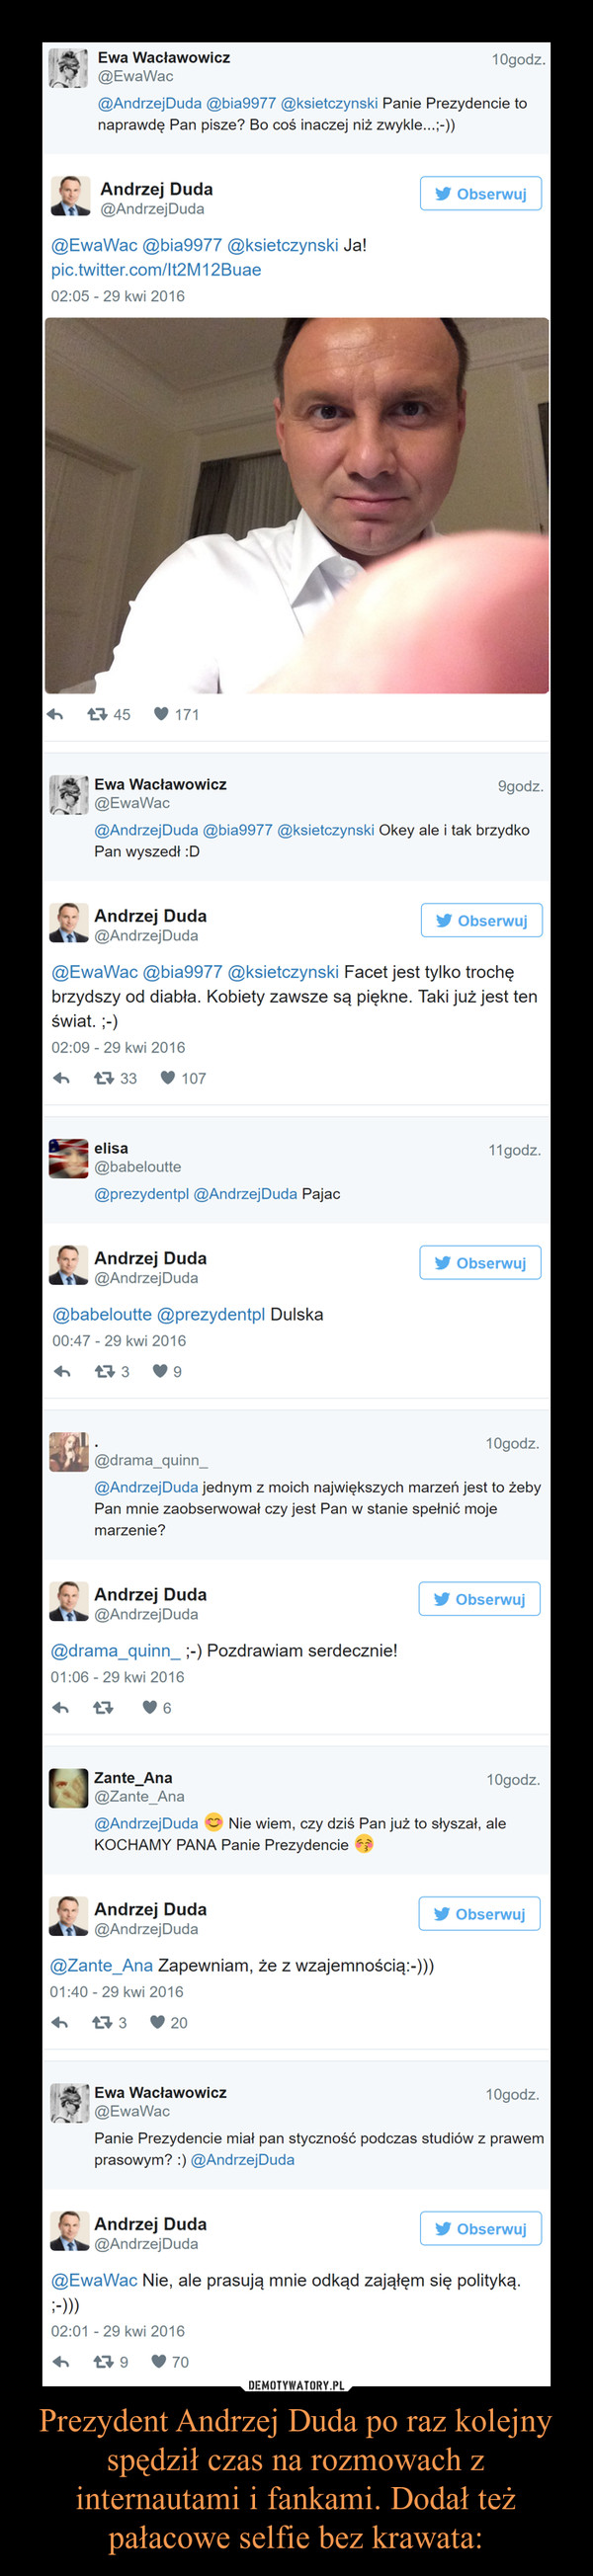 Prezydent Andrzej Duda po raz kolejny spędził czas na rozmowach z internautami i fankami. Dodał też pałacowe selfie bez krawata: